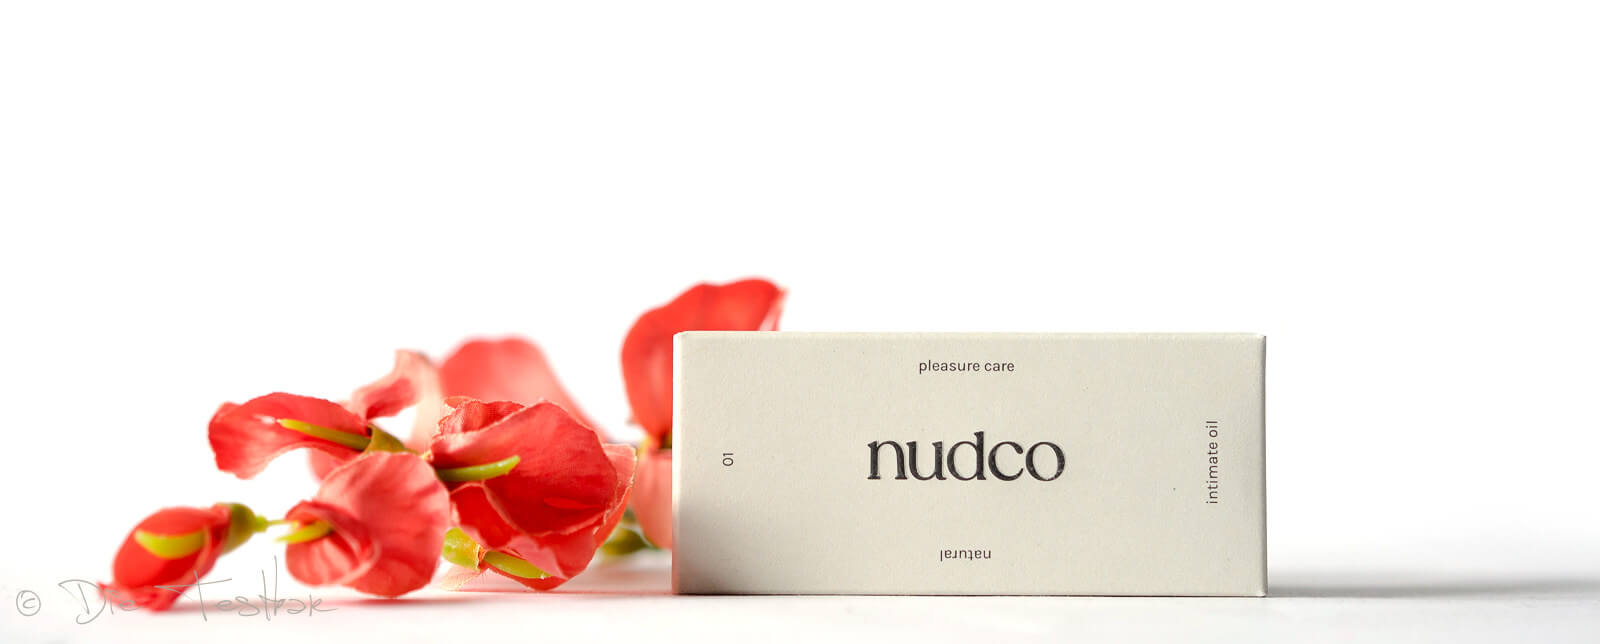 Veganes Intimöl aus natürlichen Inhaltsstoffen und ultradünne vegane Kondome von nudco 1